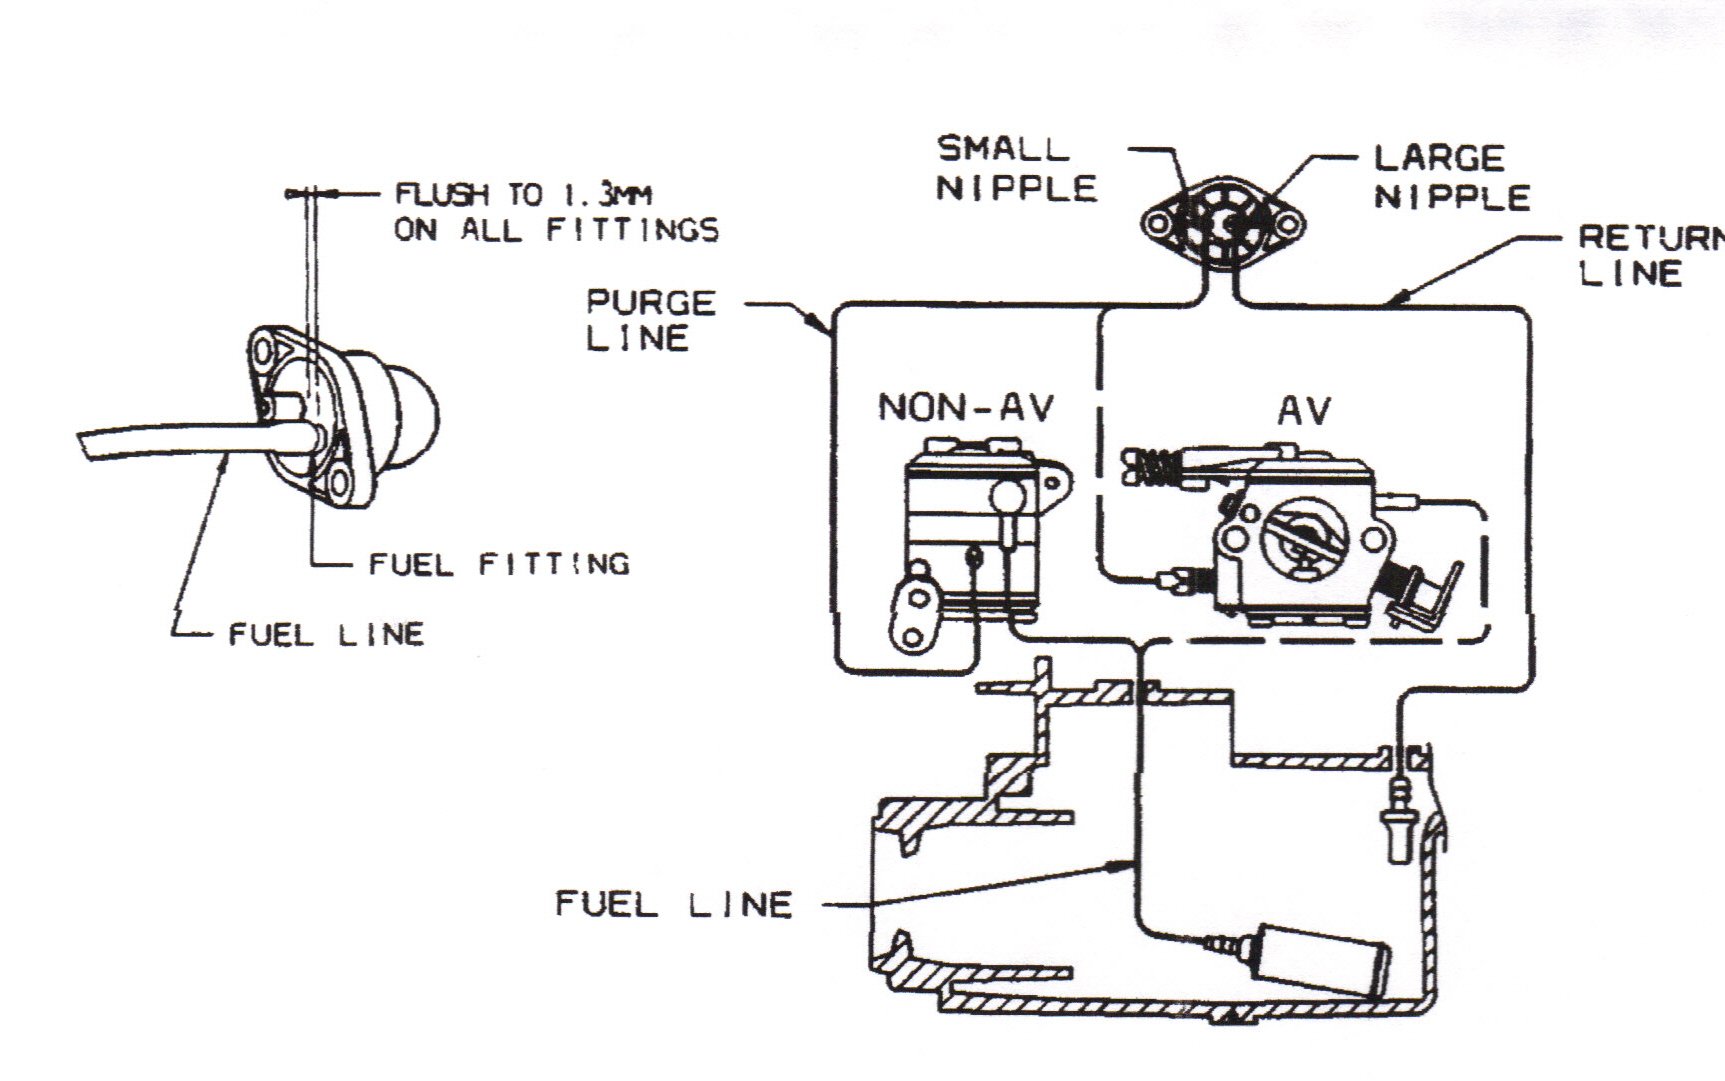 poulan pro chainsaw parts diagram pp4218avx